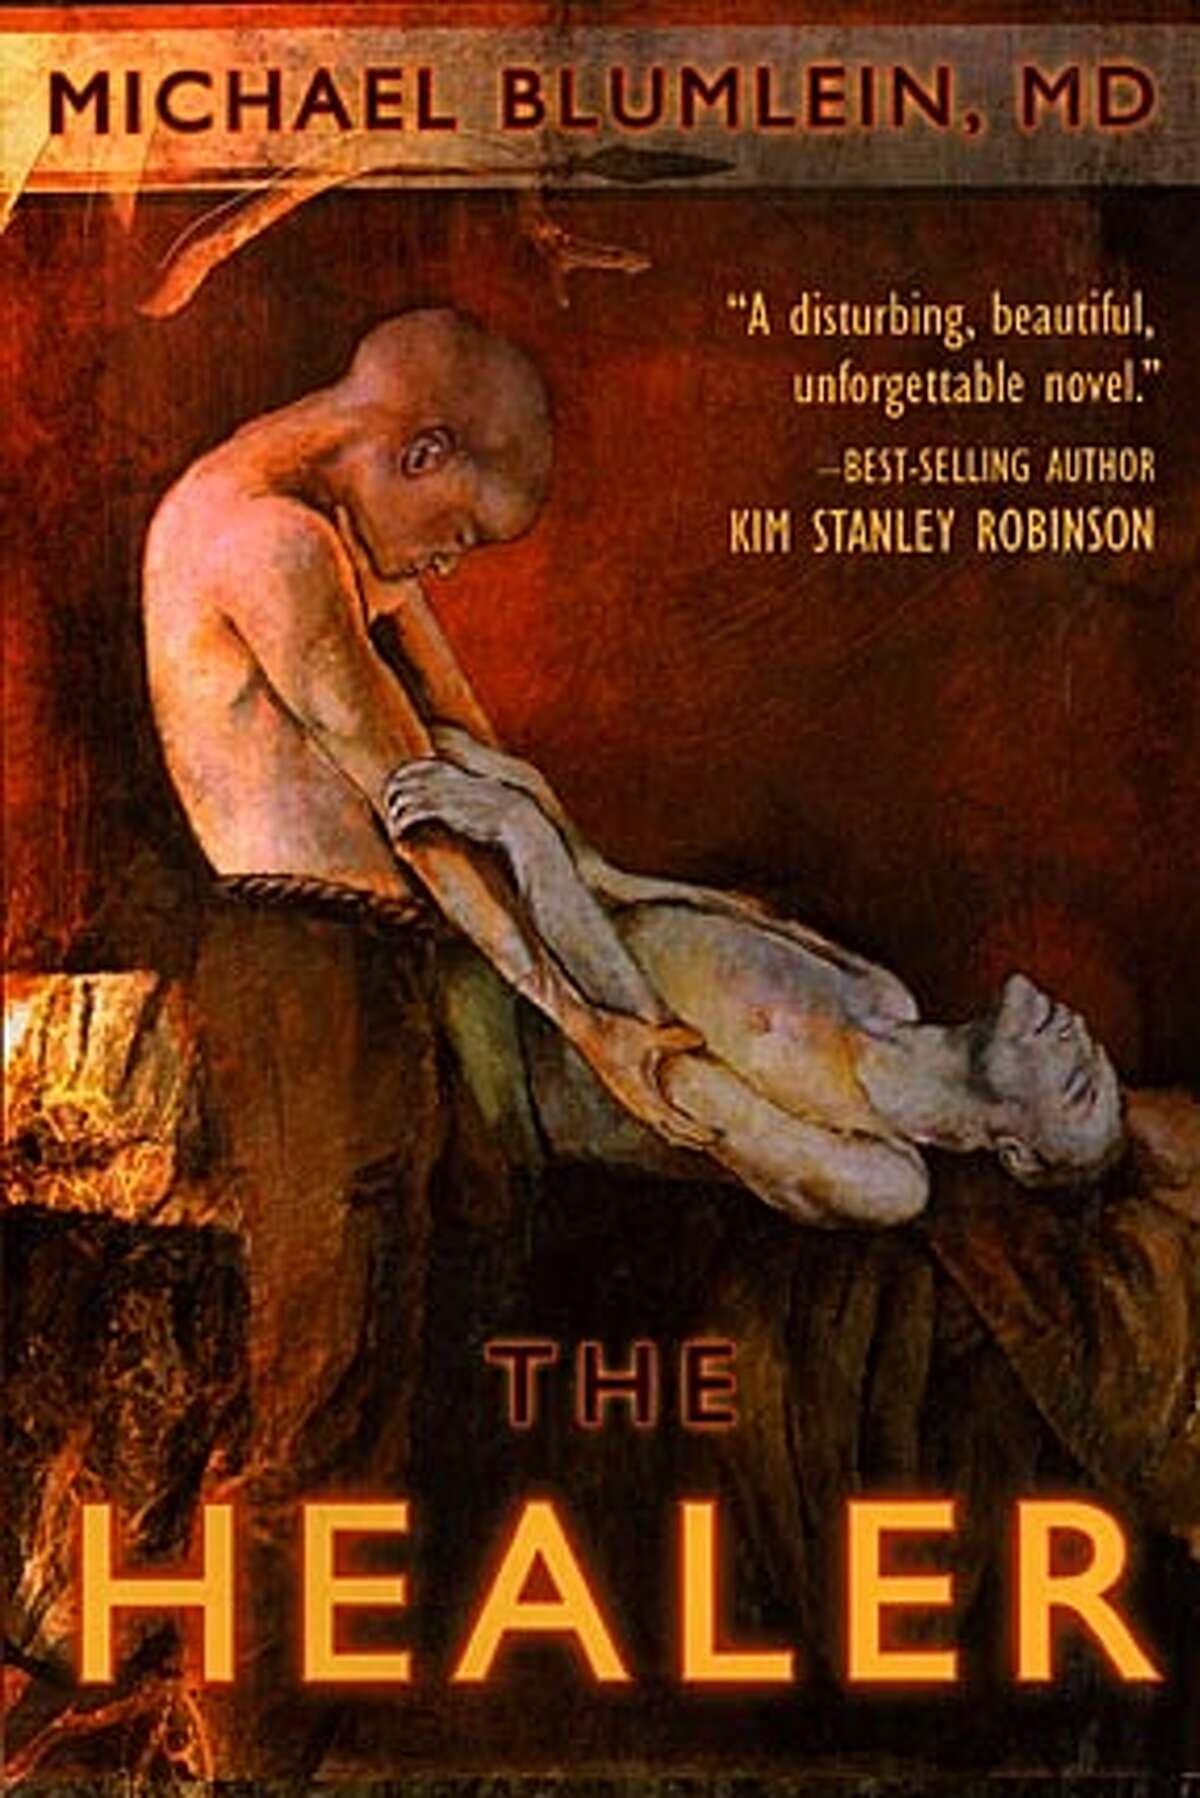 "The Healer" by Michael Blumlein